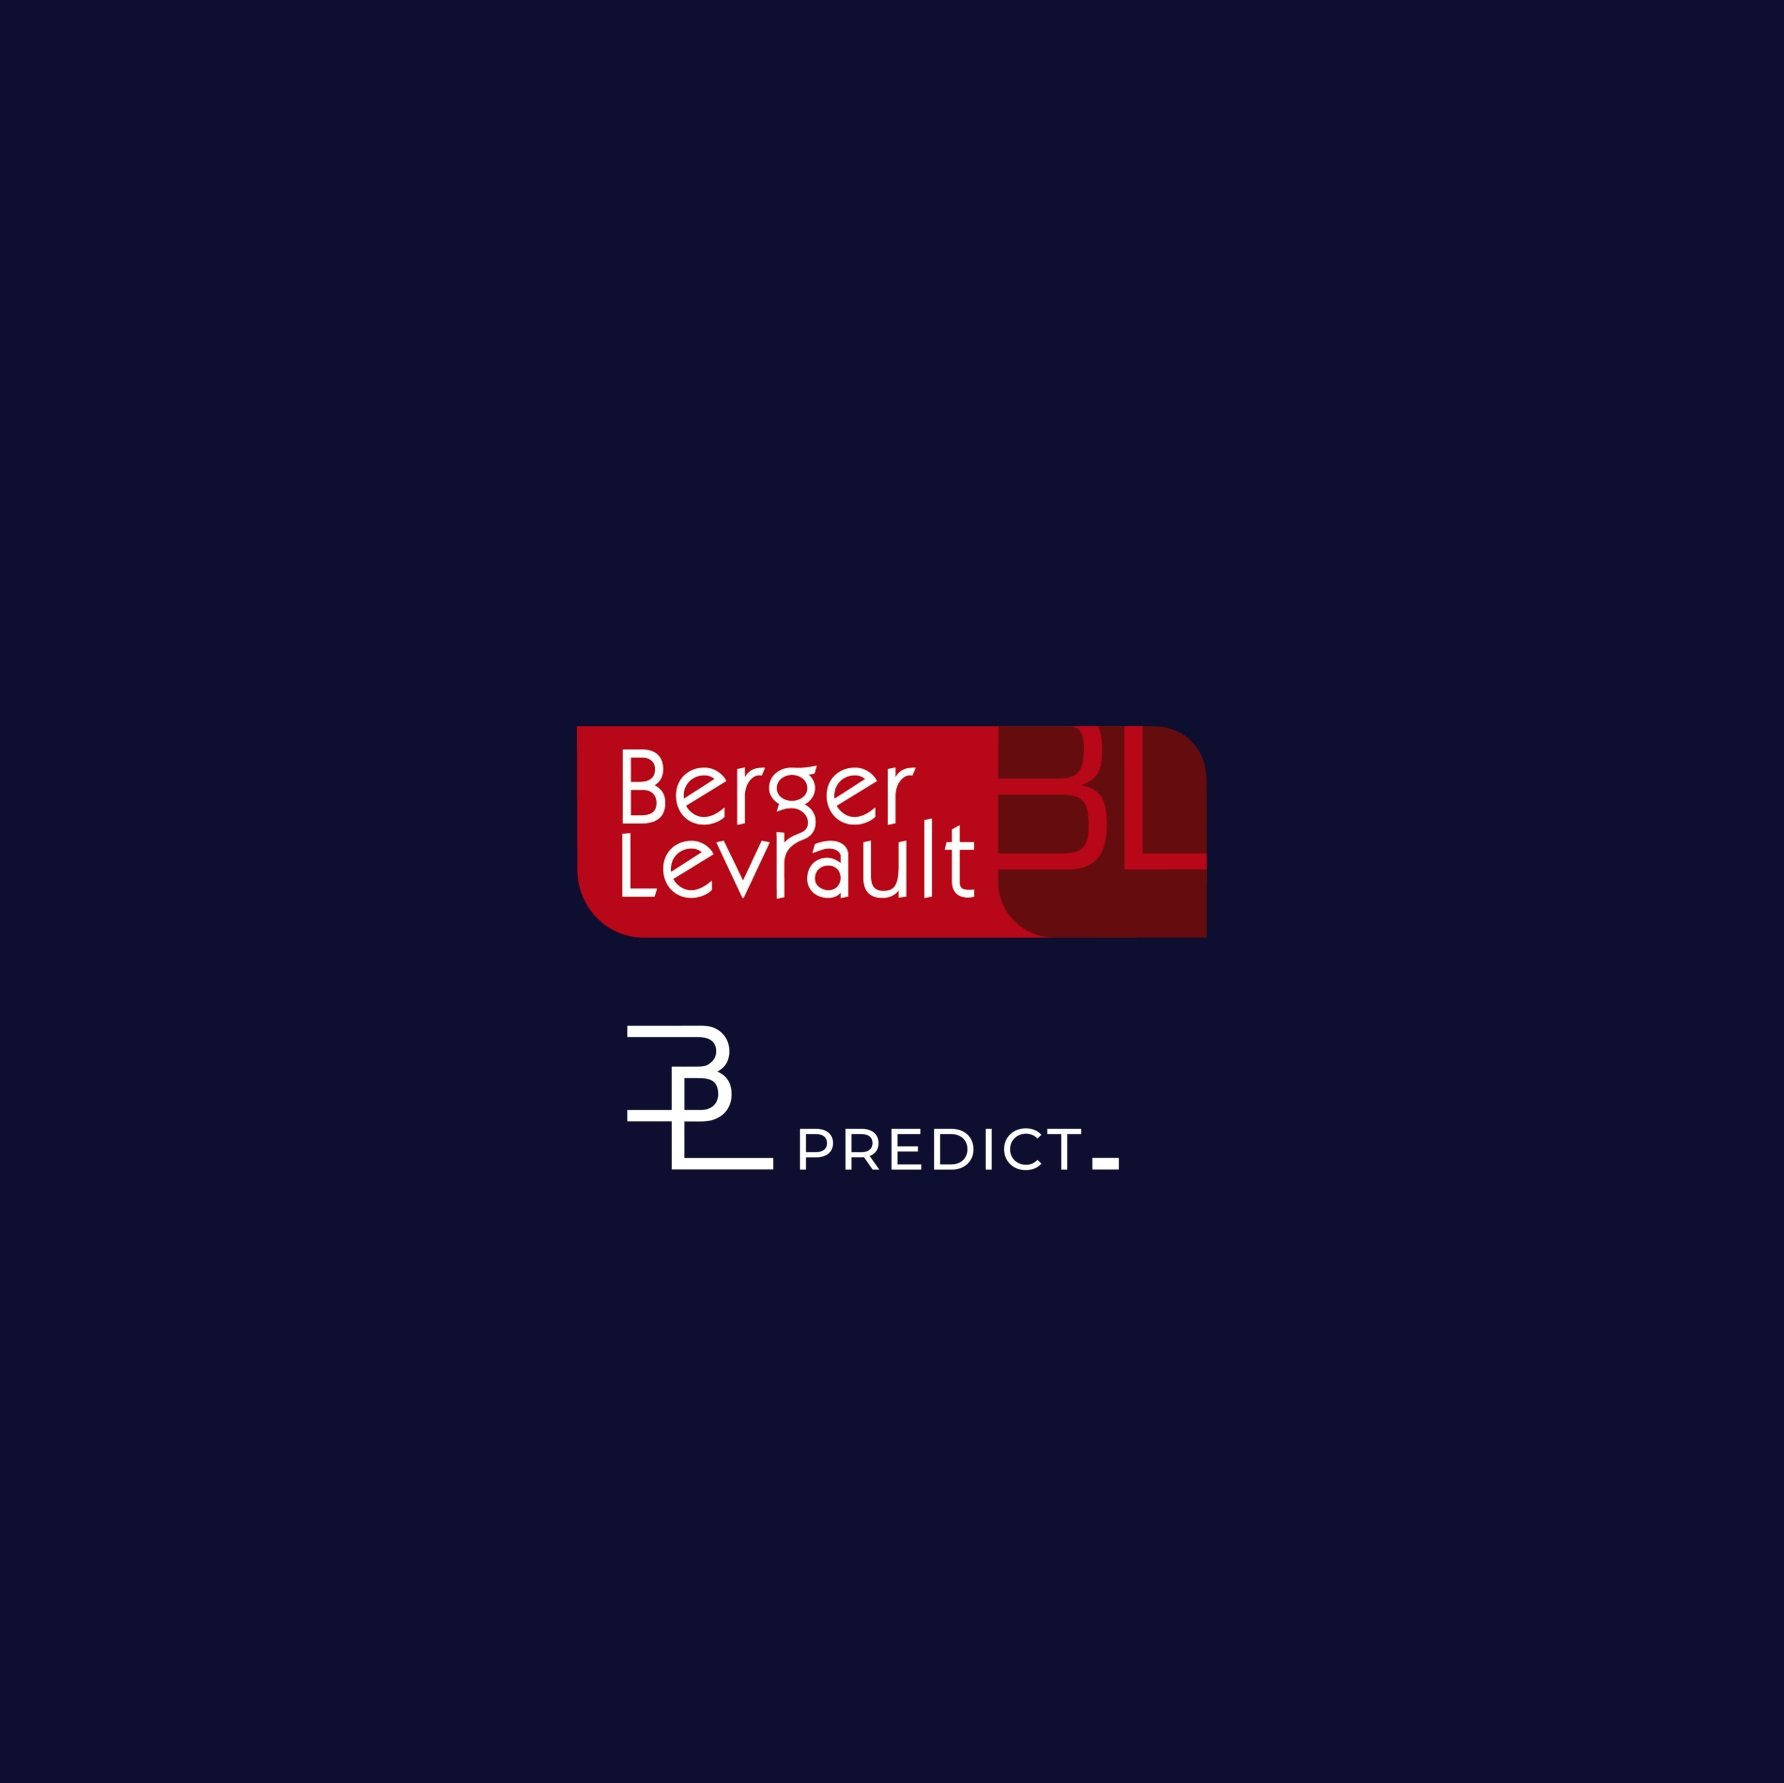 logos Berger-Levrault et BL.Predict